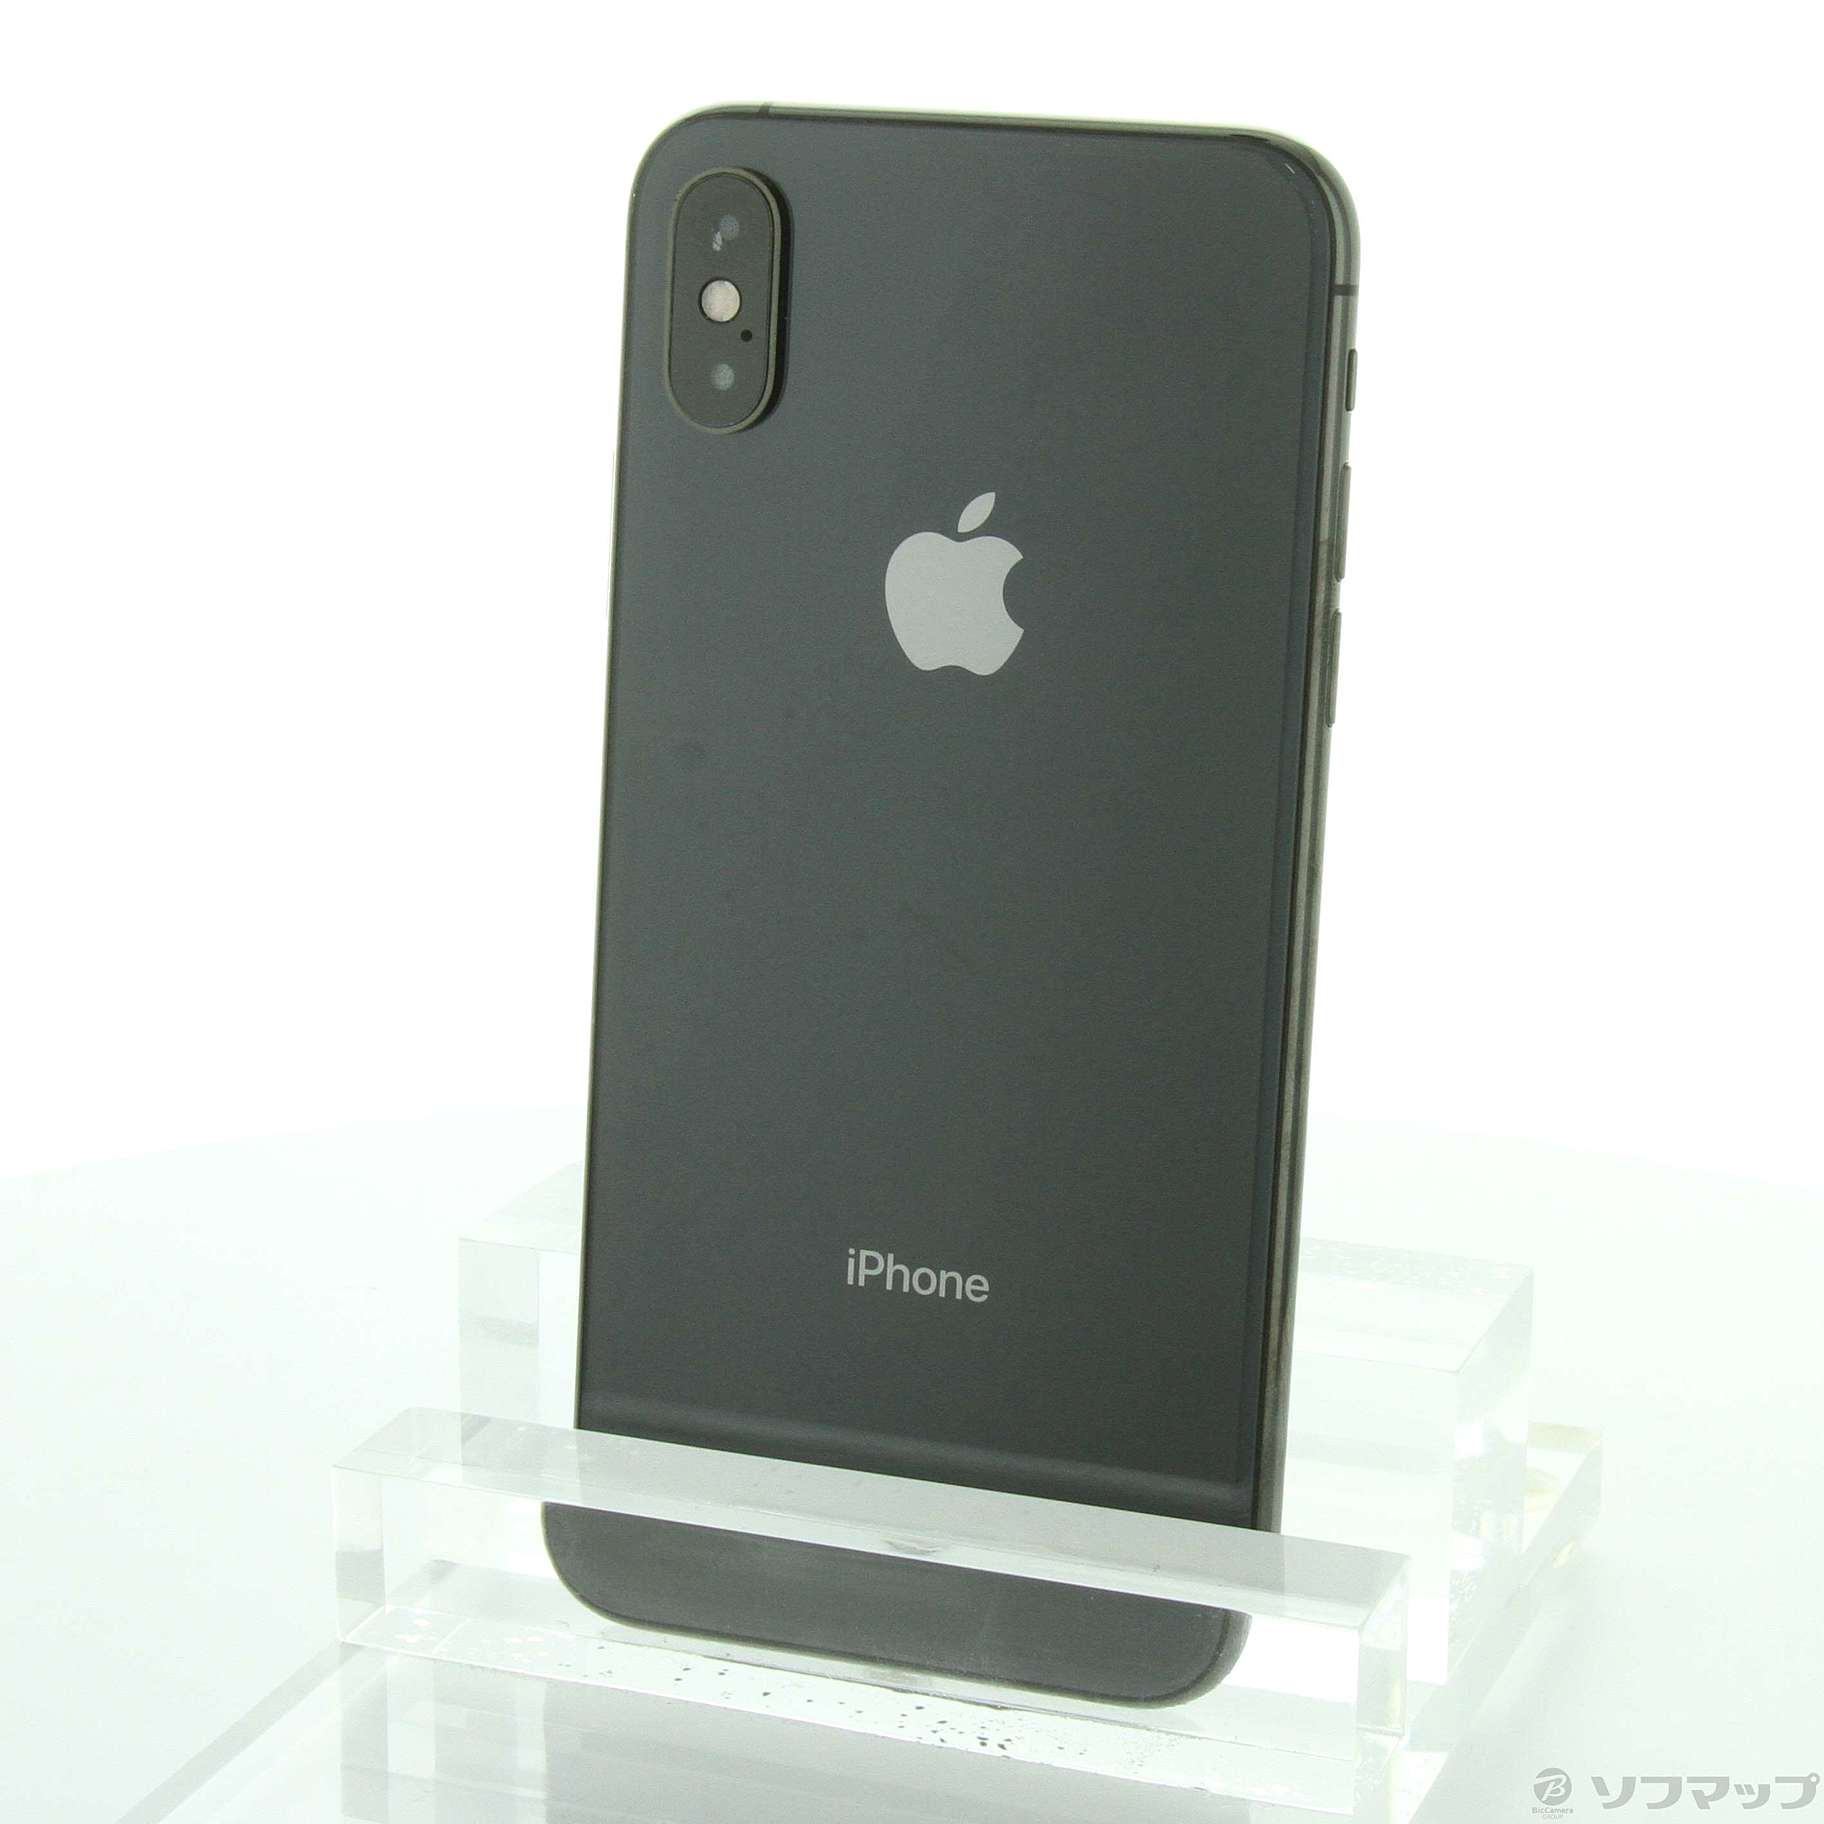 入手困難-Apple(アップル) iPhoneXS 64GB スペースグレイ MTAW2J／A SIMフリー ：ソフマップ中古専門店 -  lab.comfamiliar.com